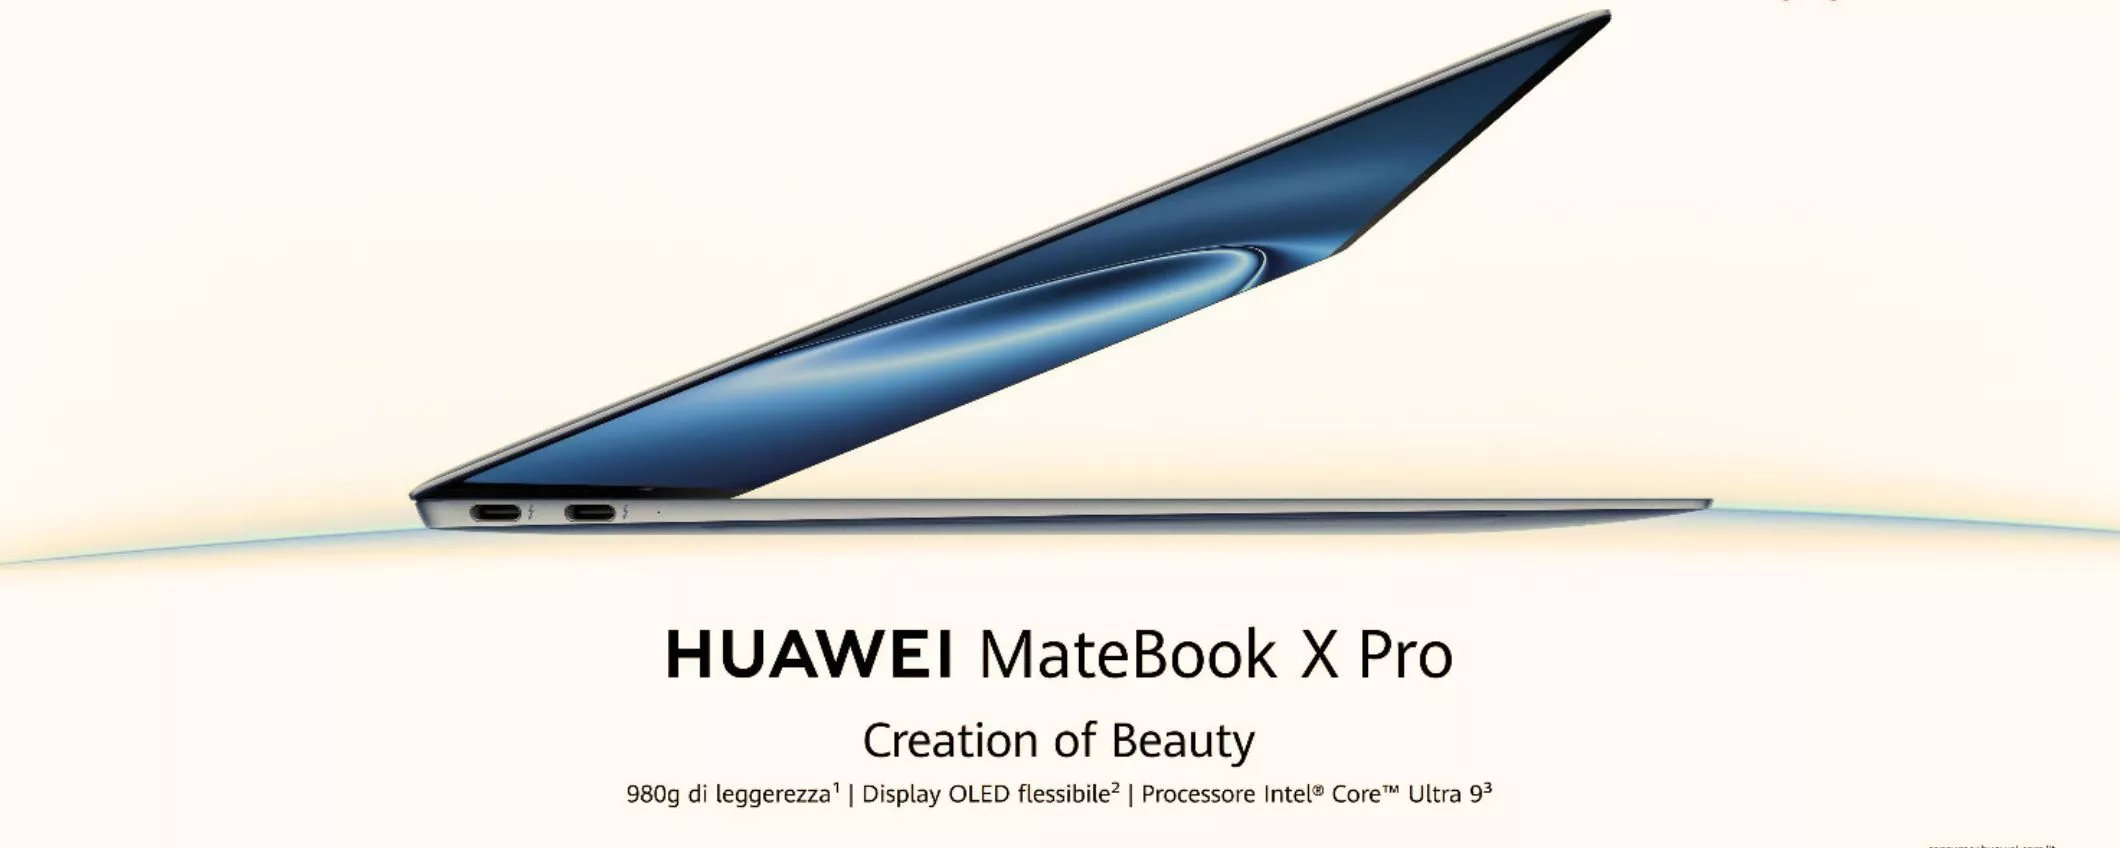 HUAWEI MateBook X Pro e HUAWEI MateBook 14: da oggi disponibili in Italia